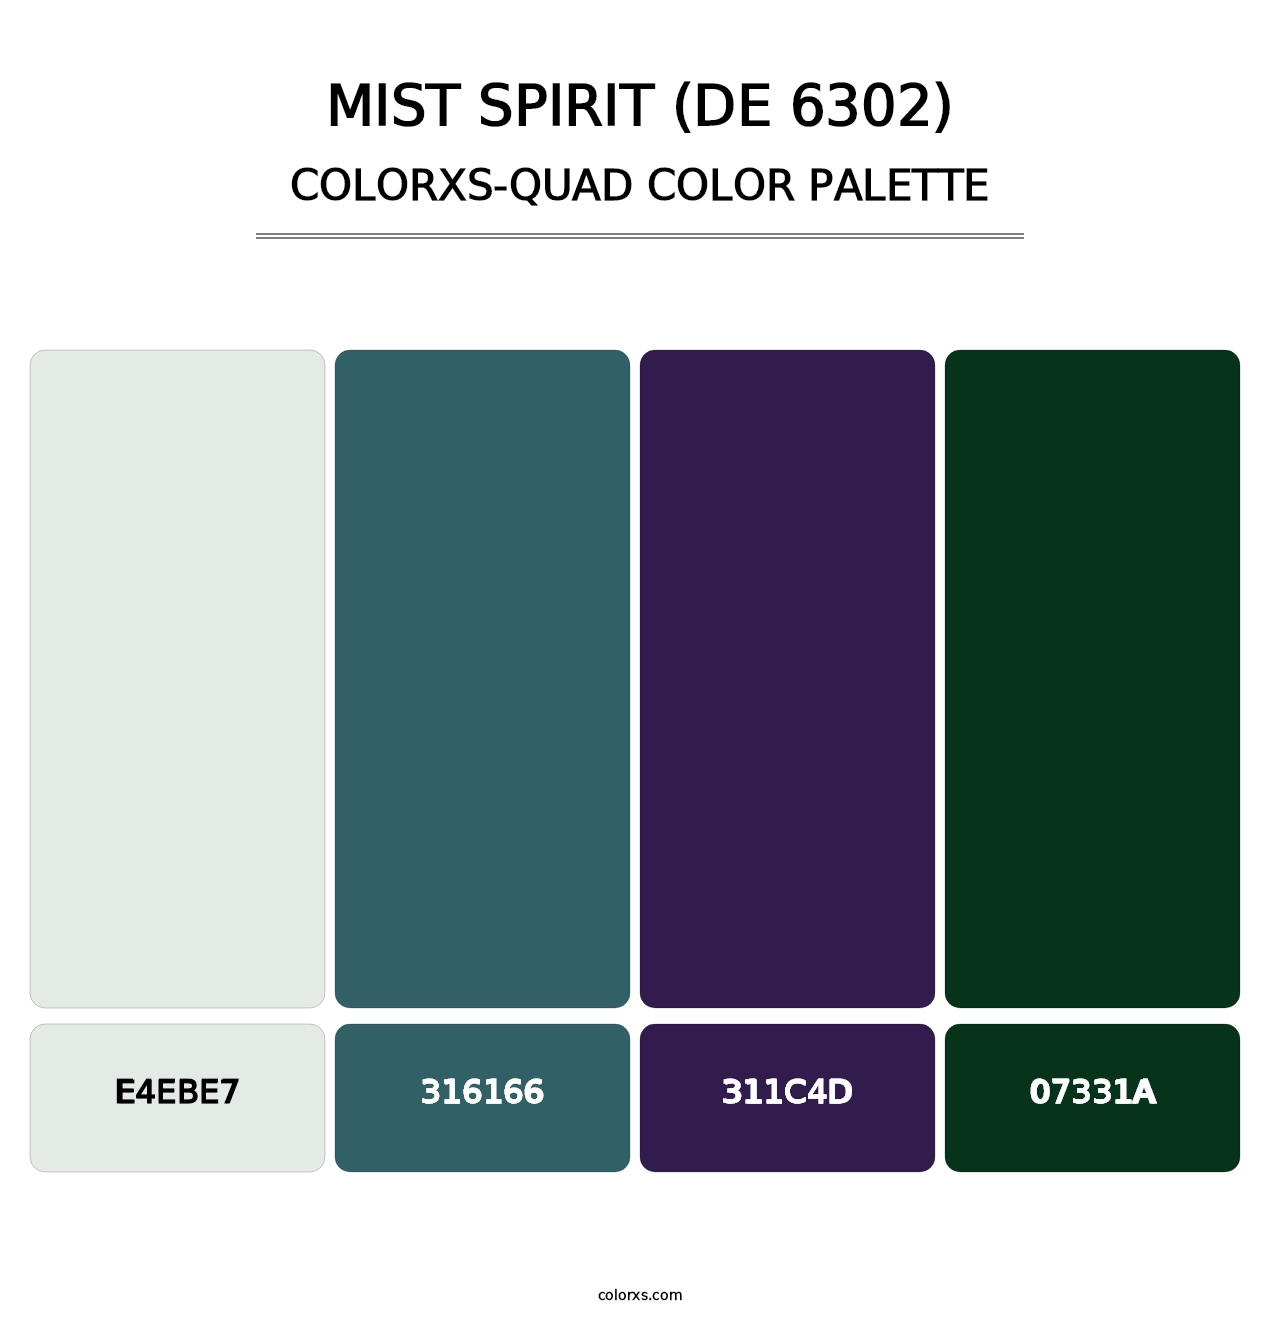 Mist Spirit (DE 6302) - Colorxs Quad Palette